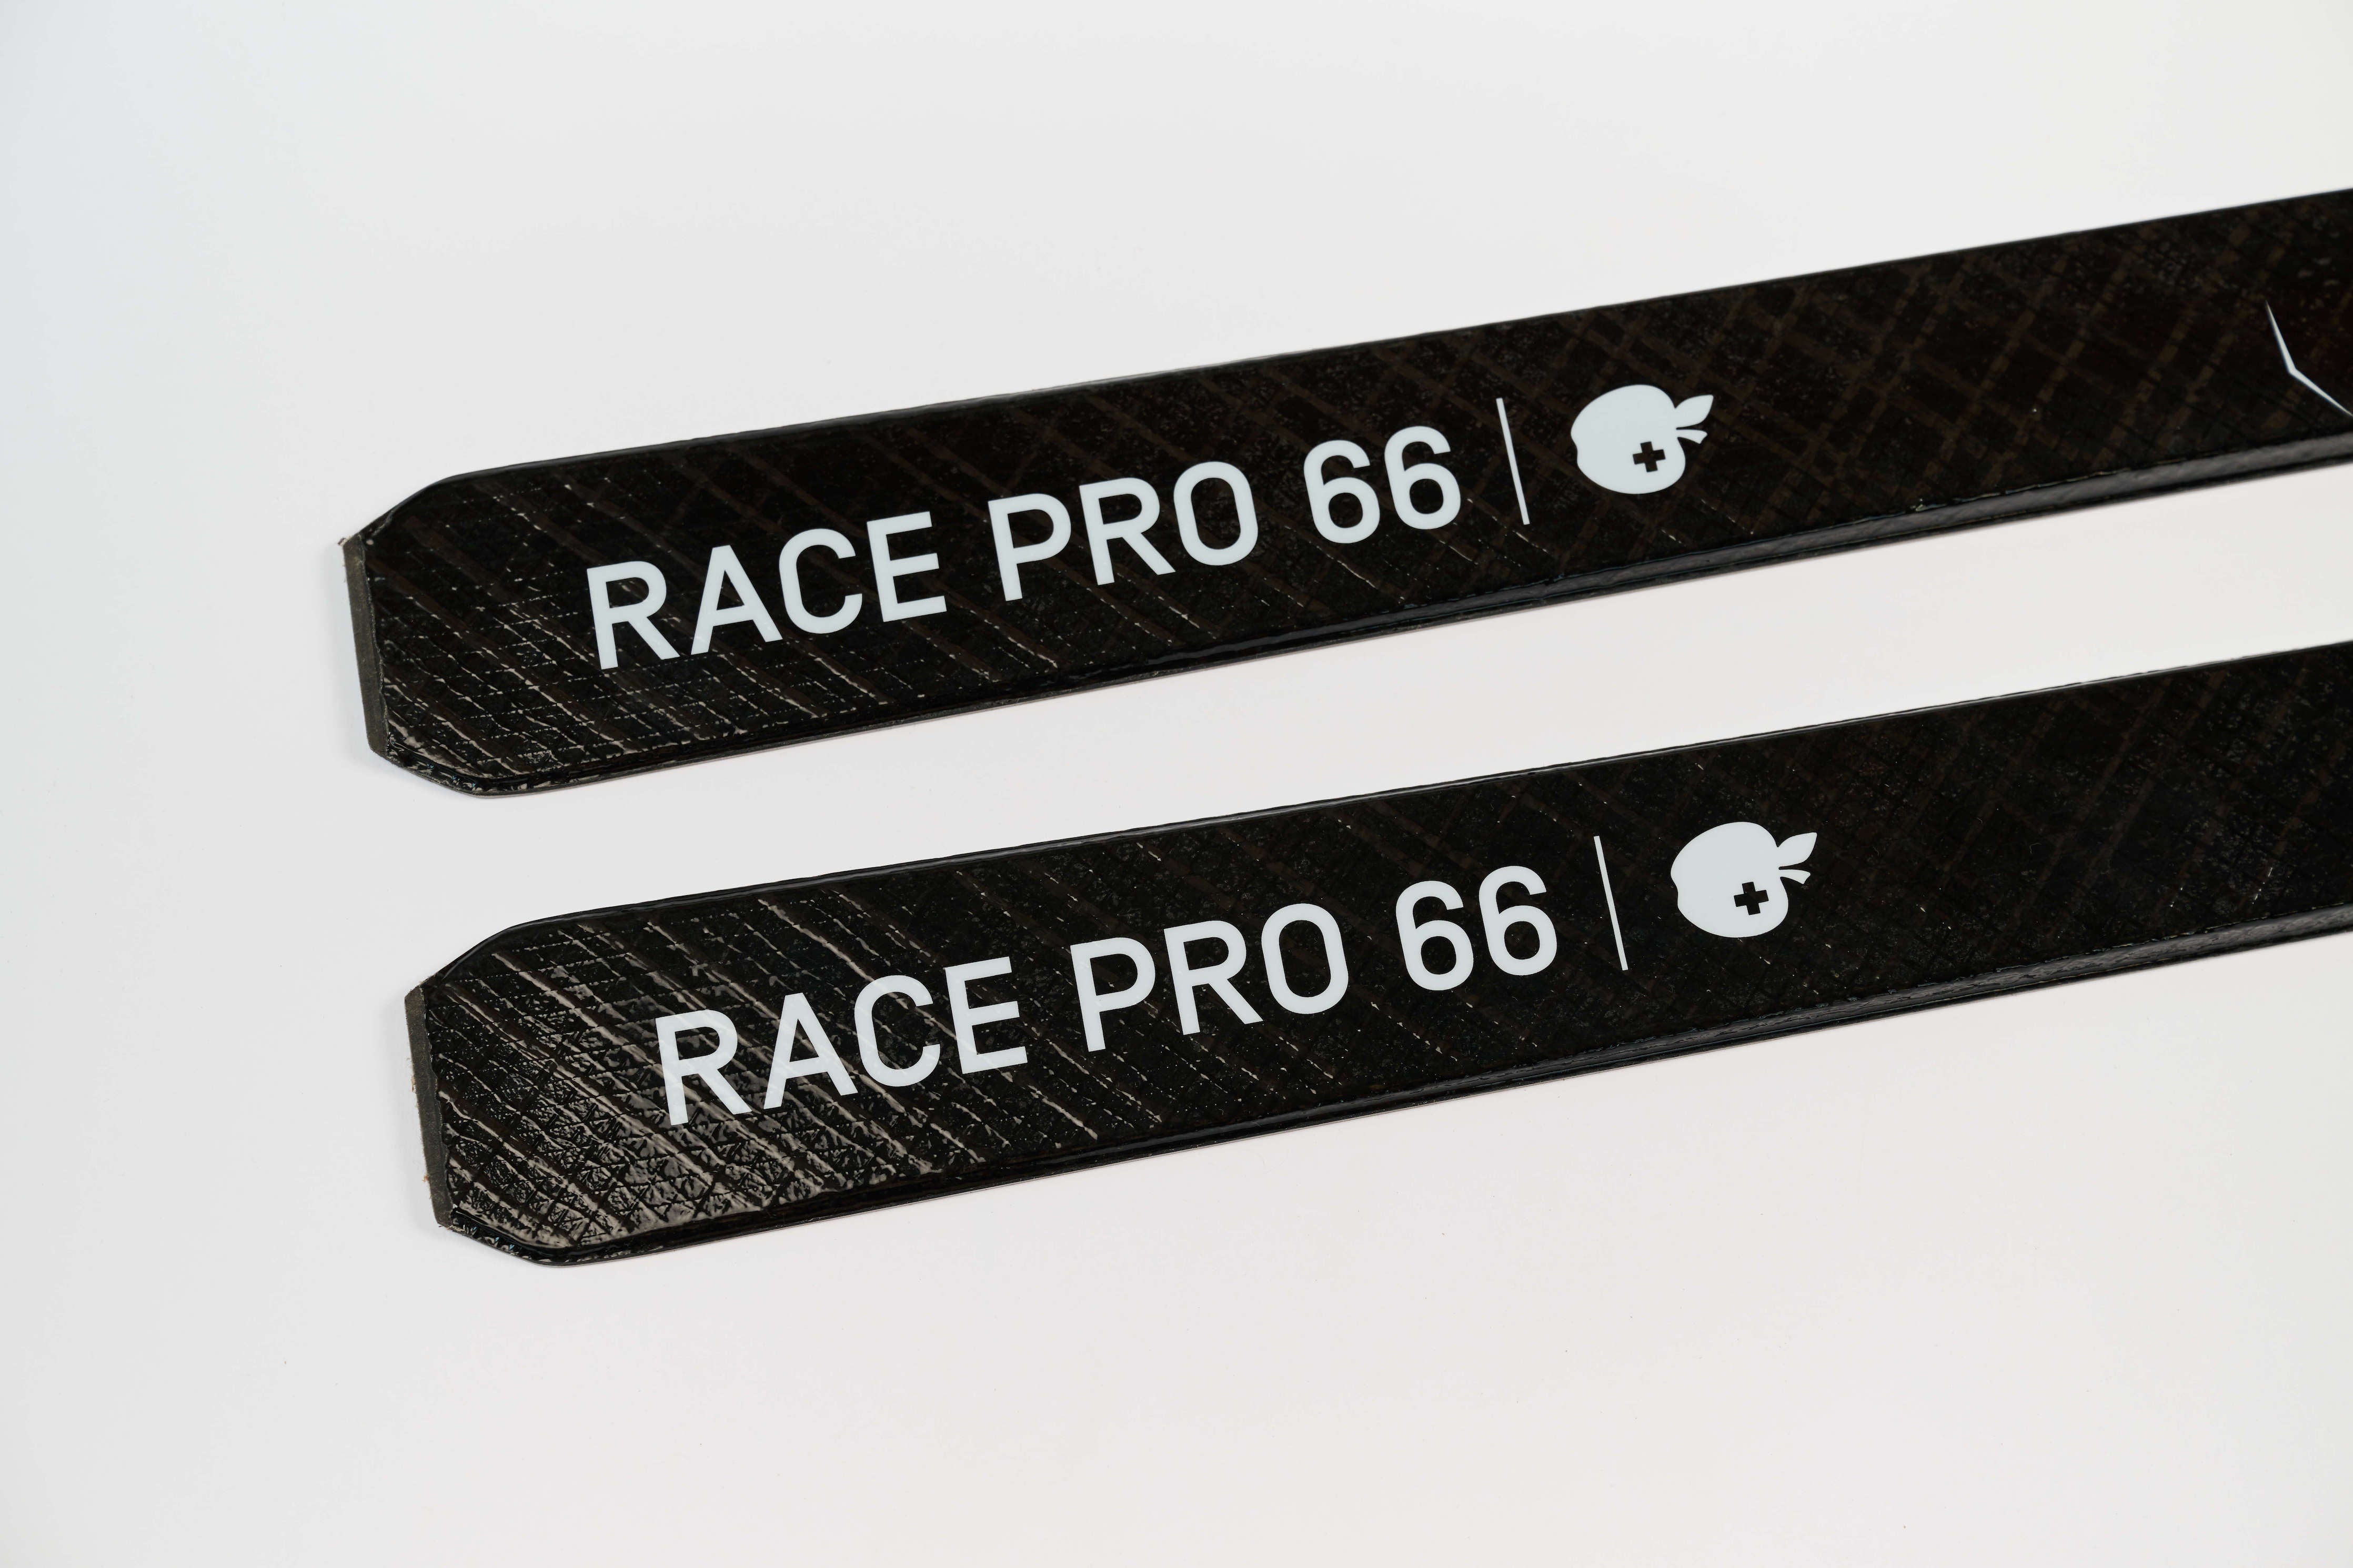 RACE PRO 66